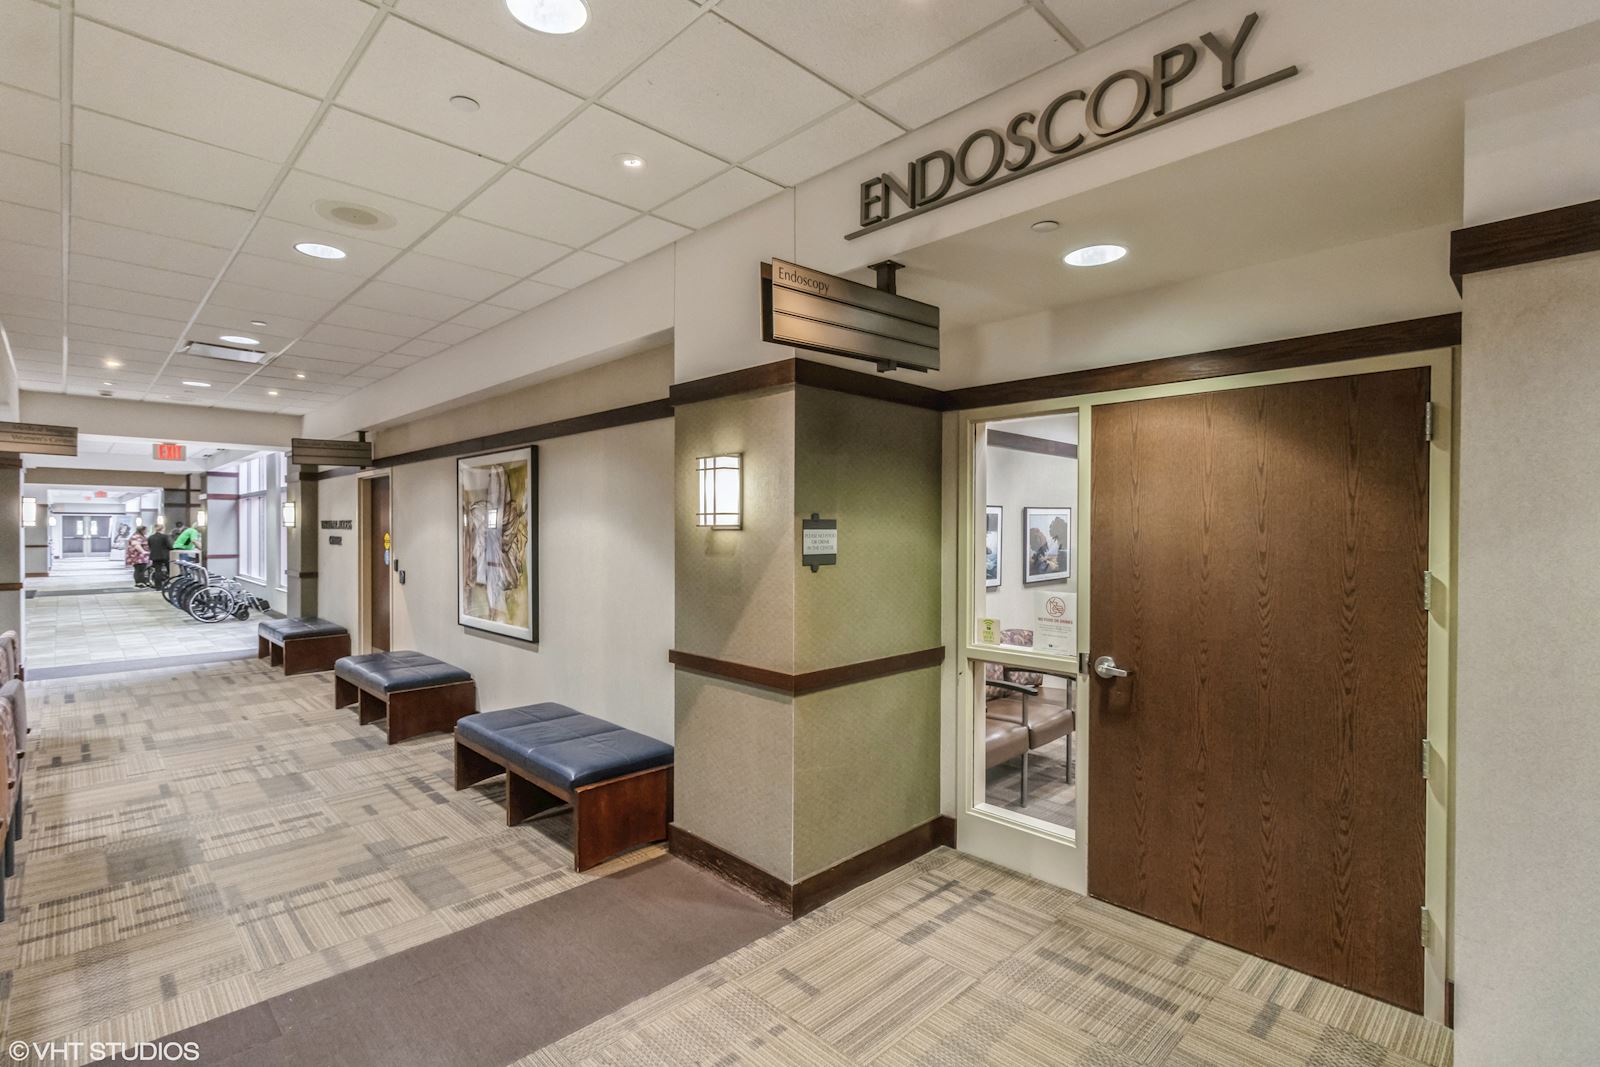 Endoscopy Center Entrance